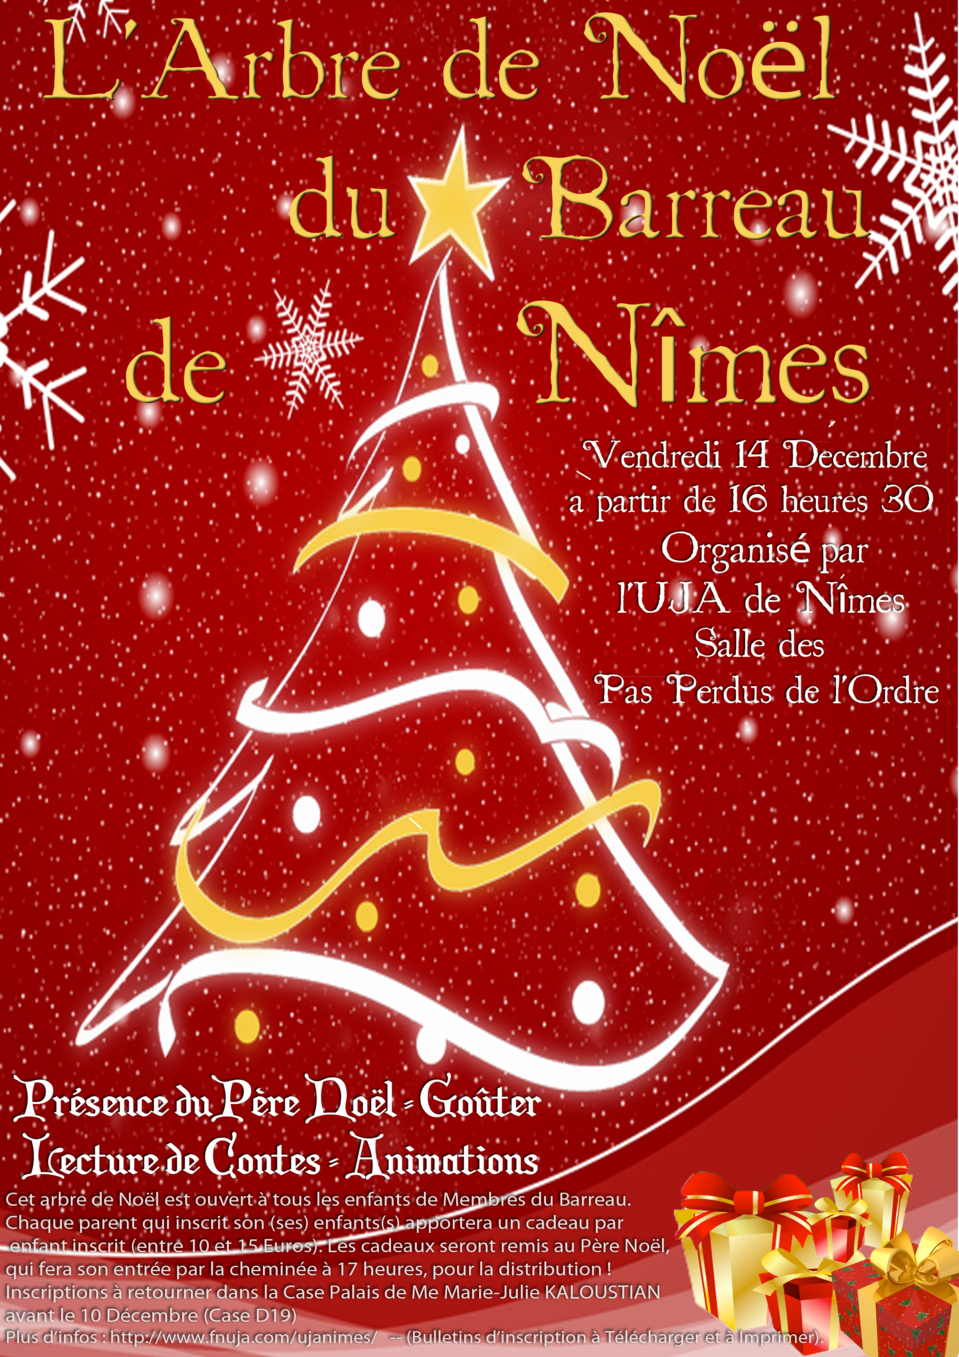 L'Arbre de Noël 2012 du Barreau de Nîmes